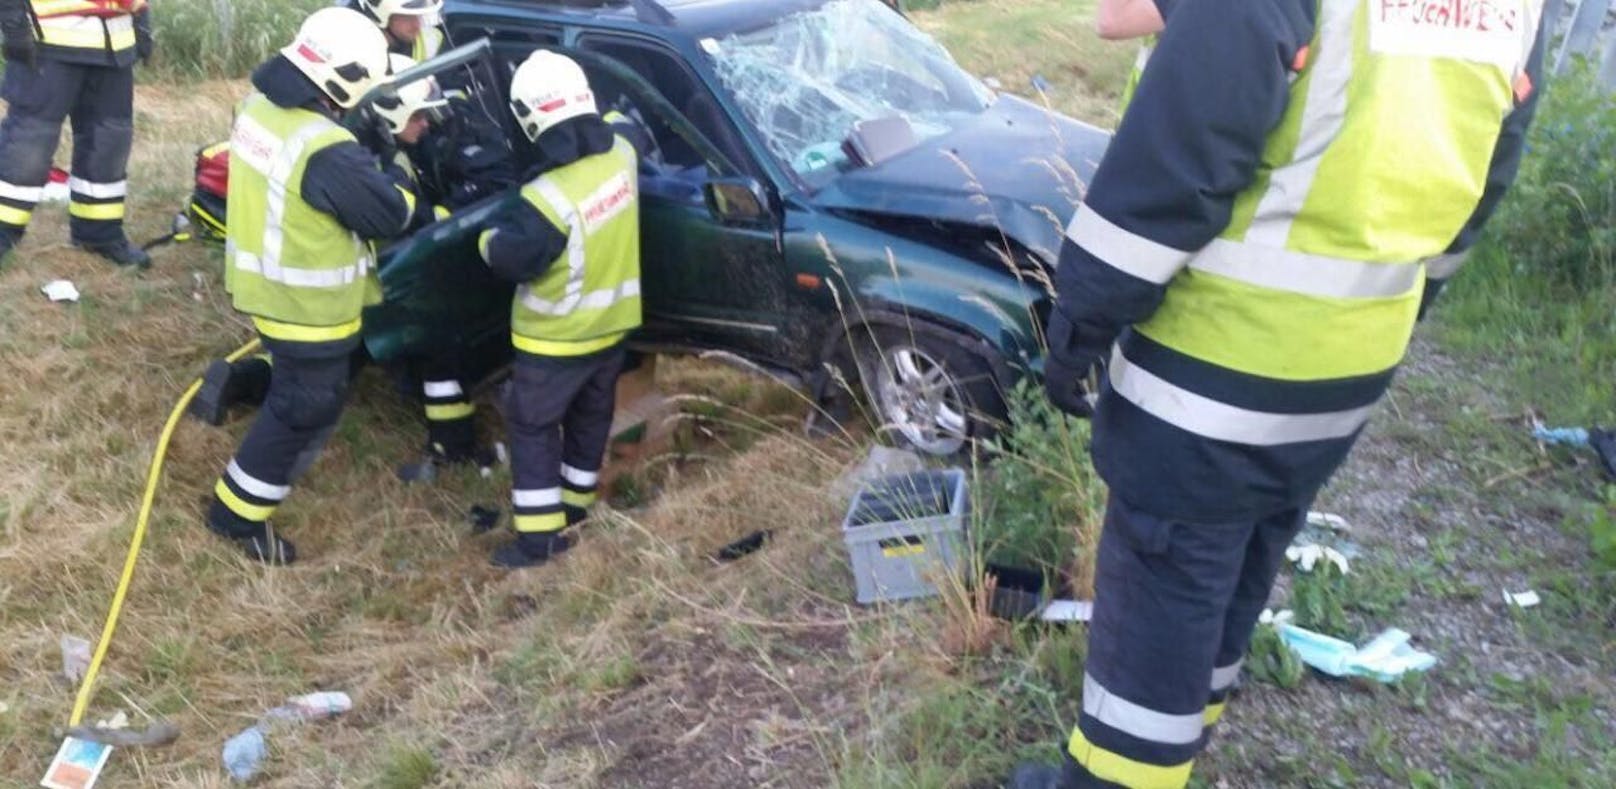 Nach Crash: Beifahrerin im Spital verstorben